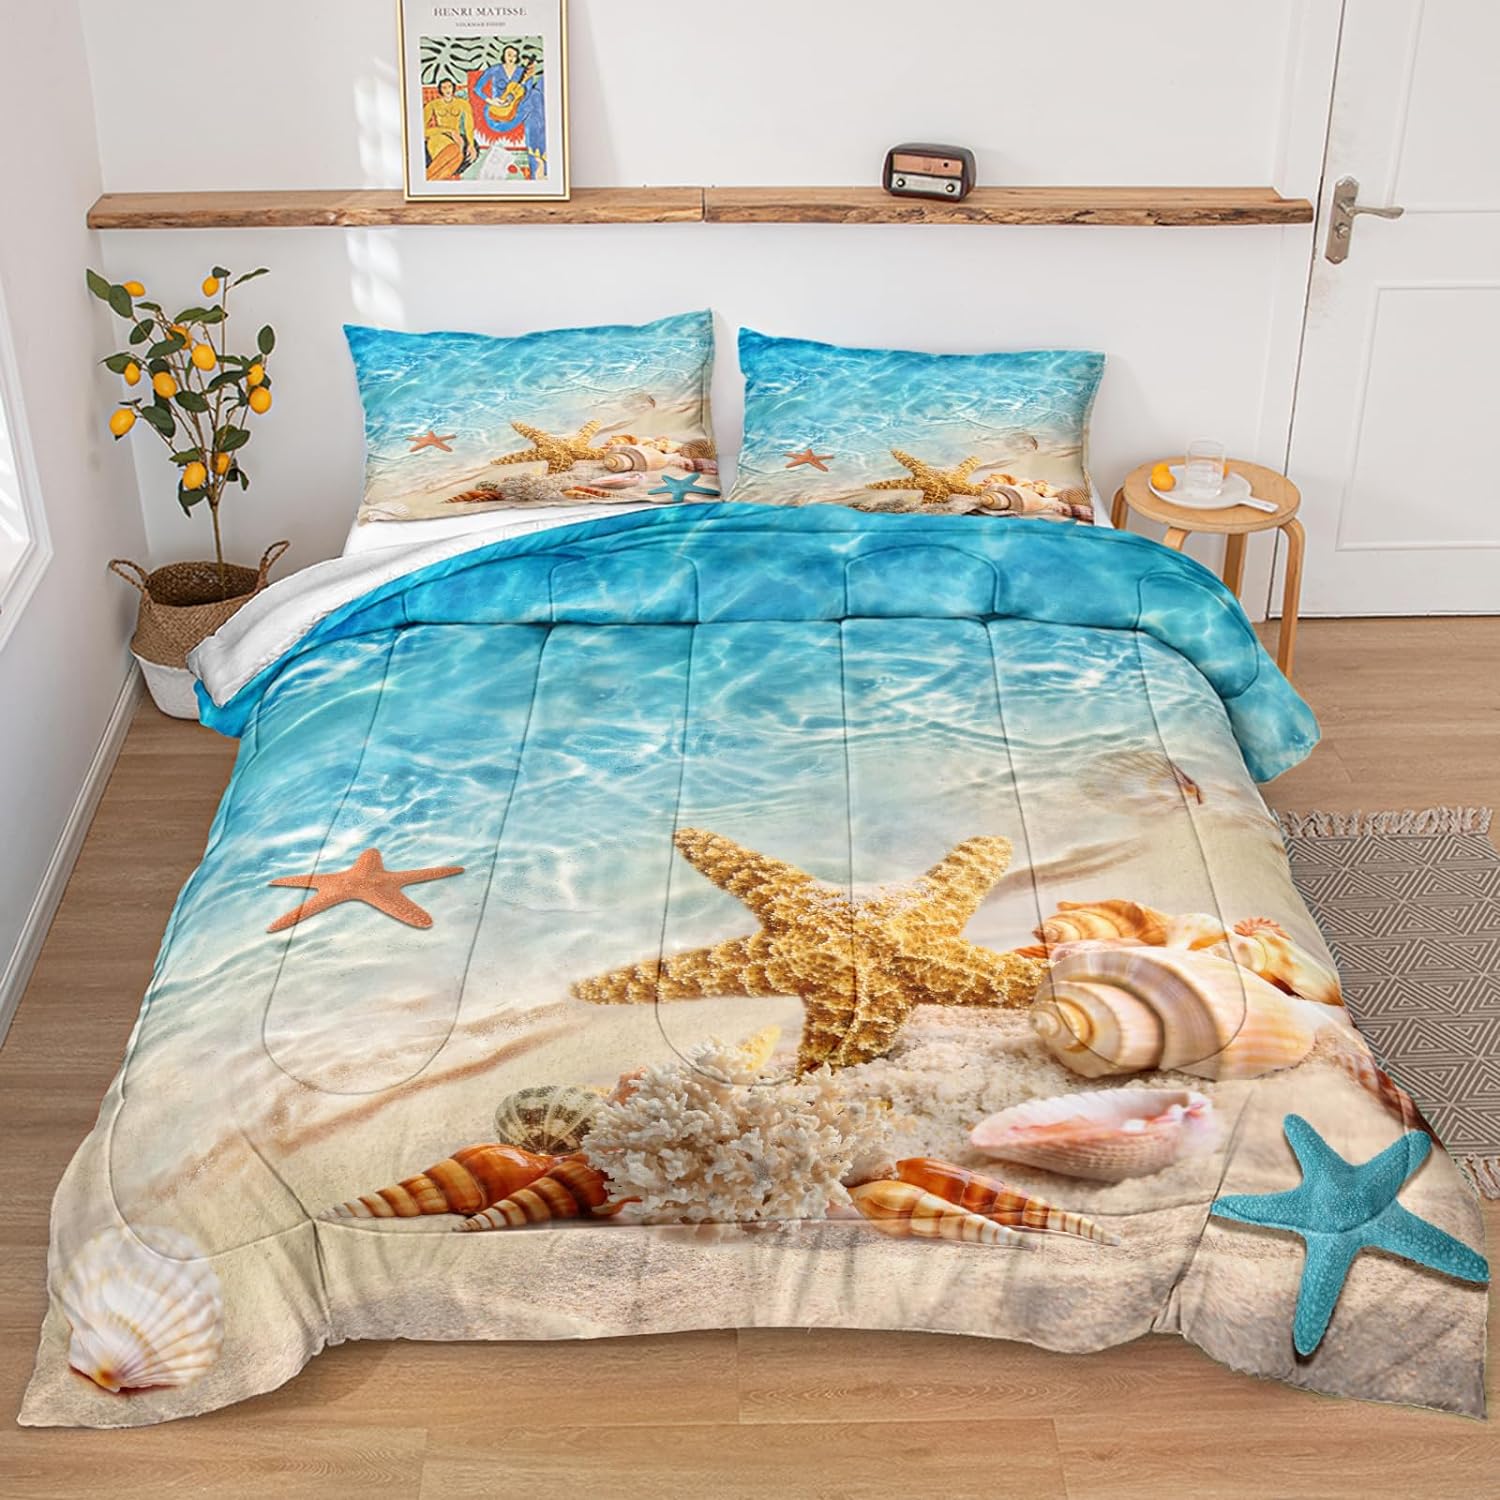 Bedbay Queen Comforter Set Beach Comforter Set Starfish Marine Life Turquoise Ocean Comforter Queen Size Bedding Comforter Set Soft Microfiber Beach Bed Comforter 3 Pcs(Aqua,Queen)